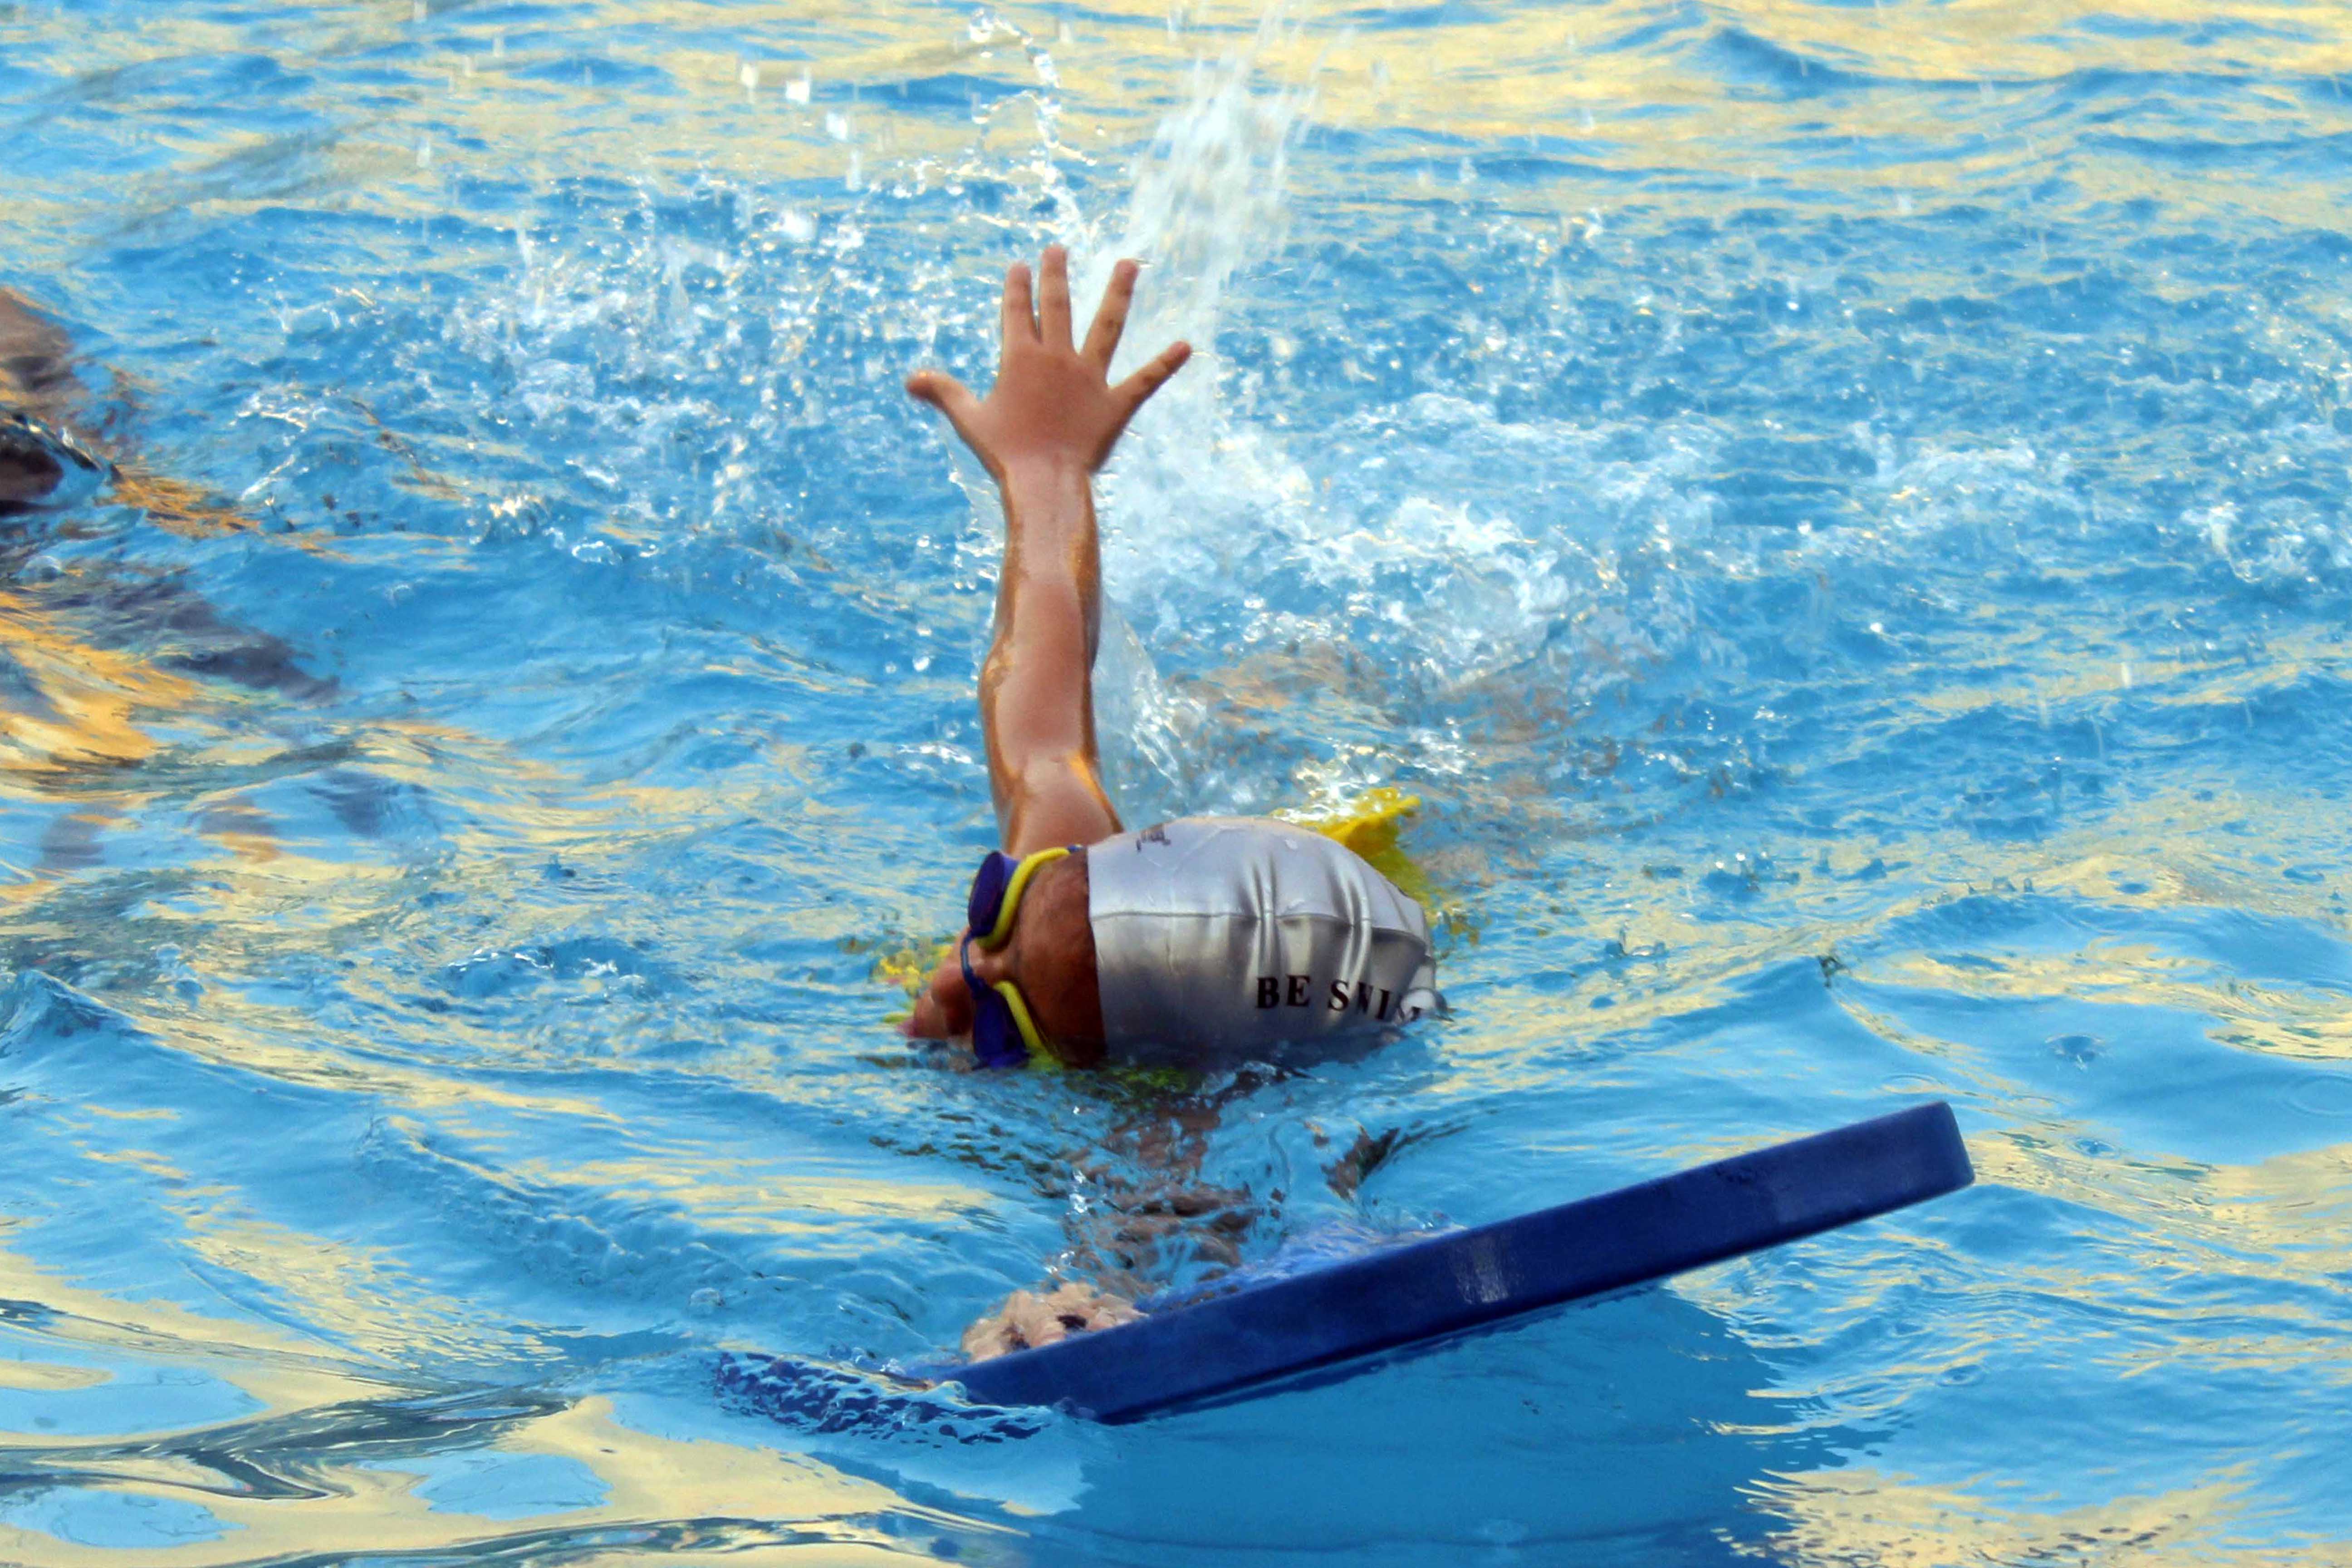 السباحة والركض يتصدران نشاطات سكان الإسماعيلية  (2)